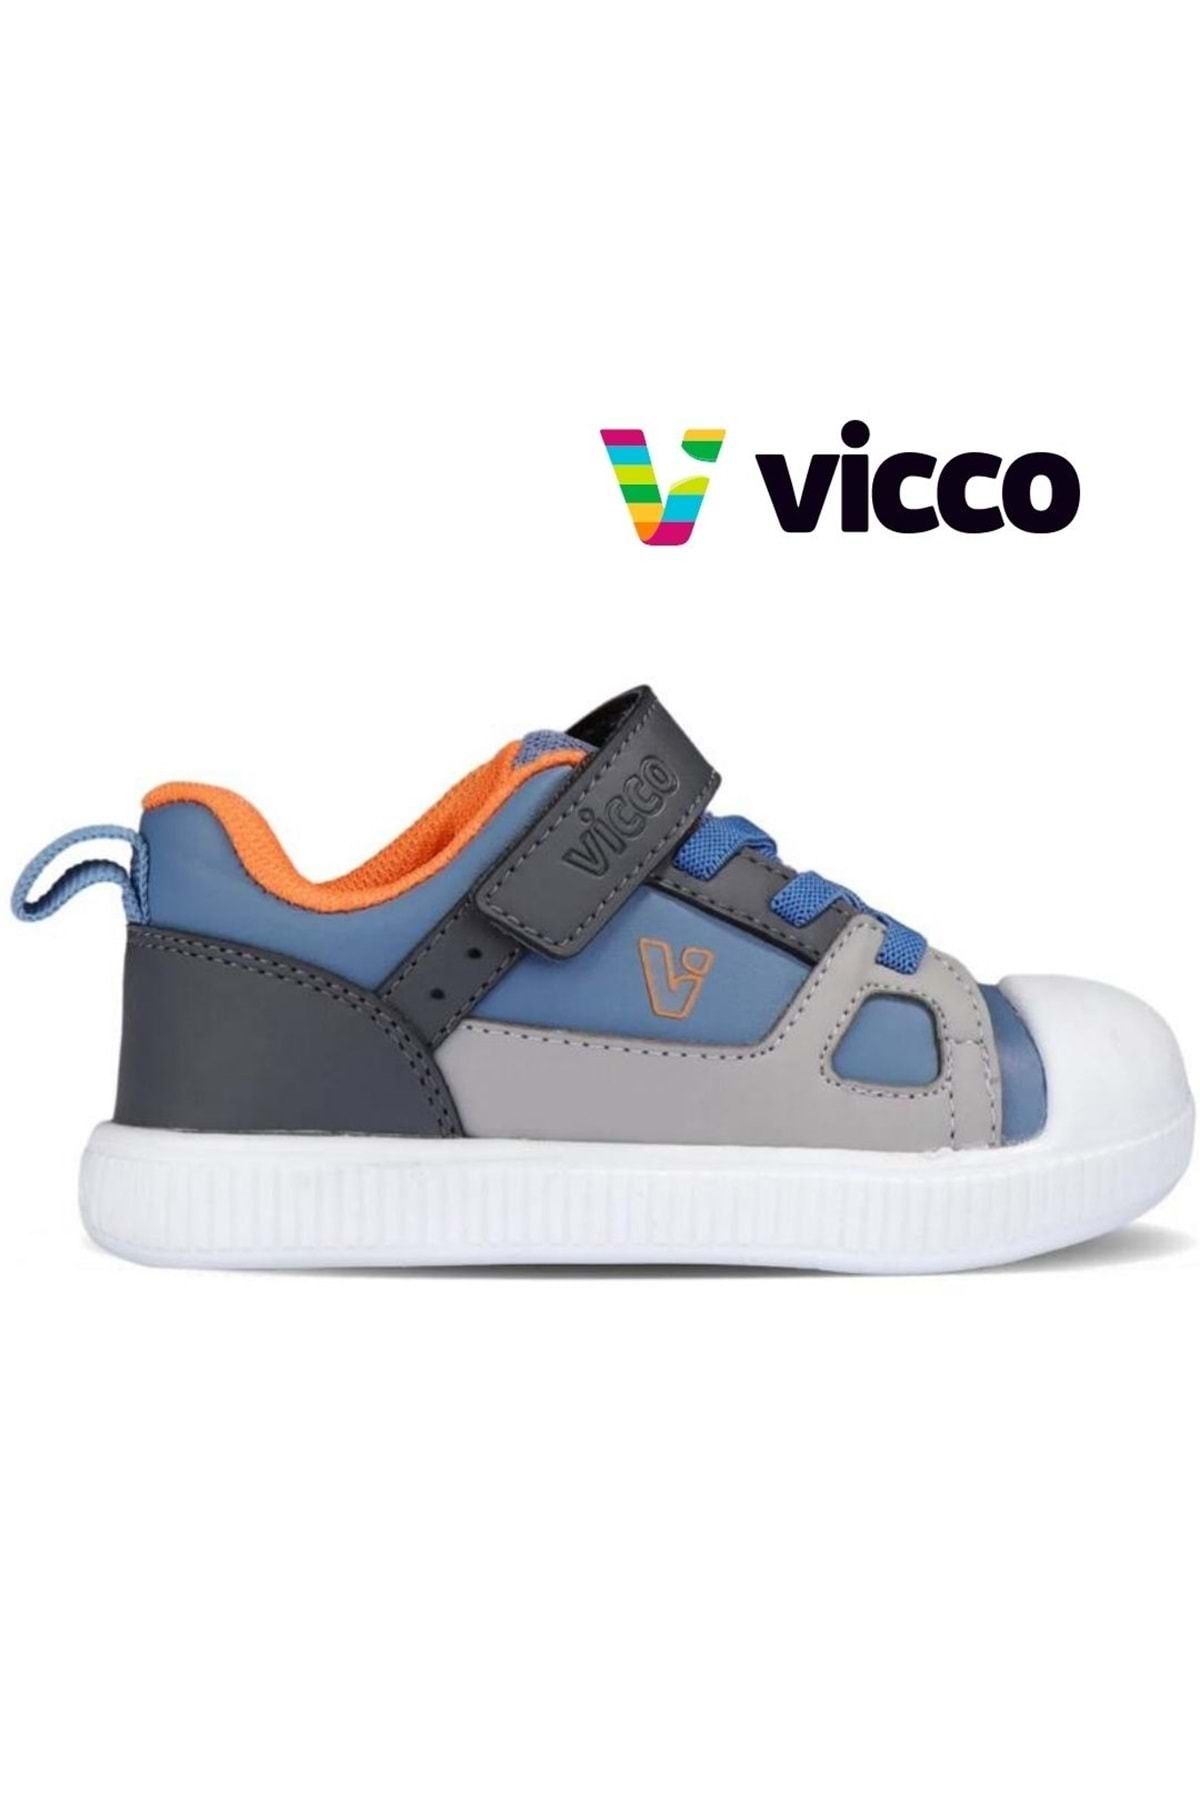 Vicco Gipsy Ortopedik Çocuk Spor Ayakkabı Mavi